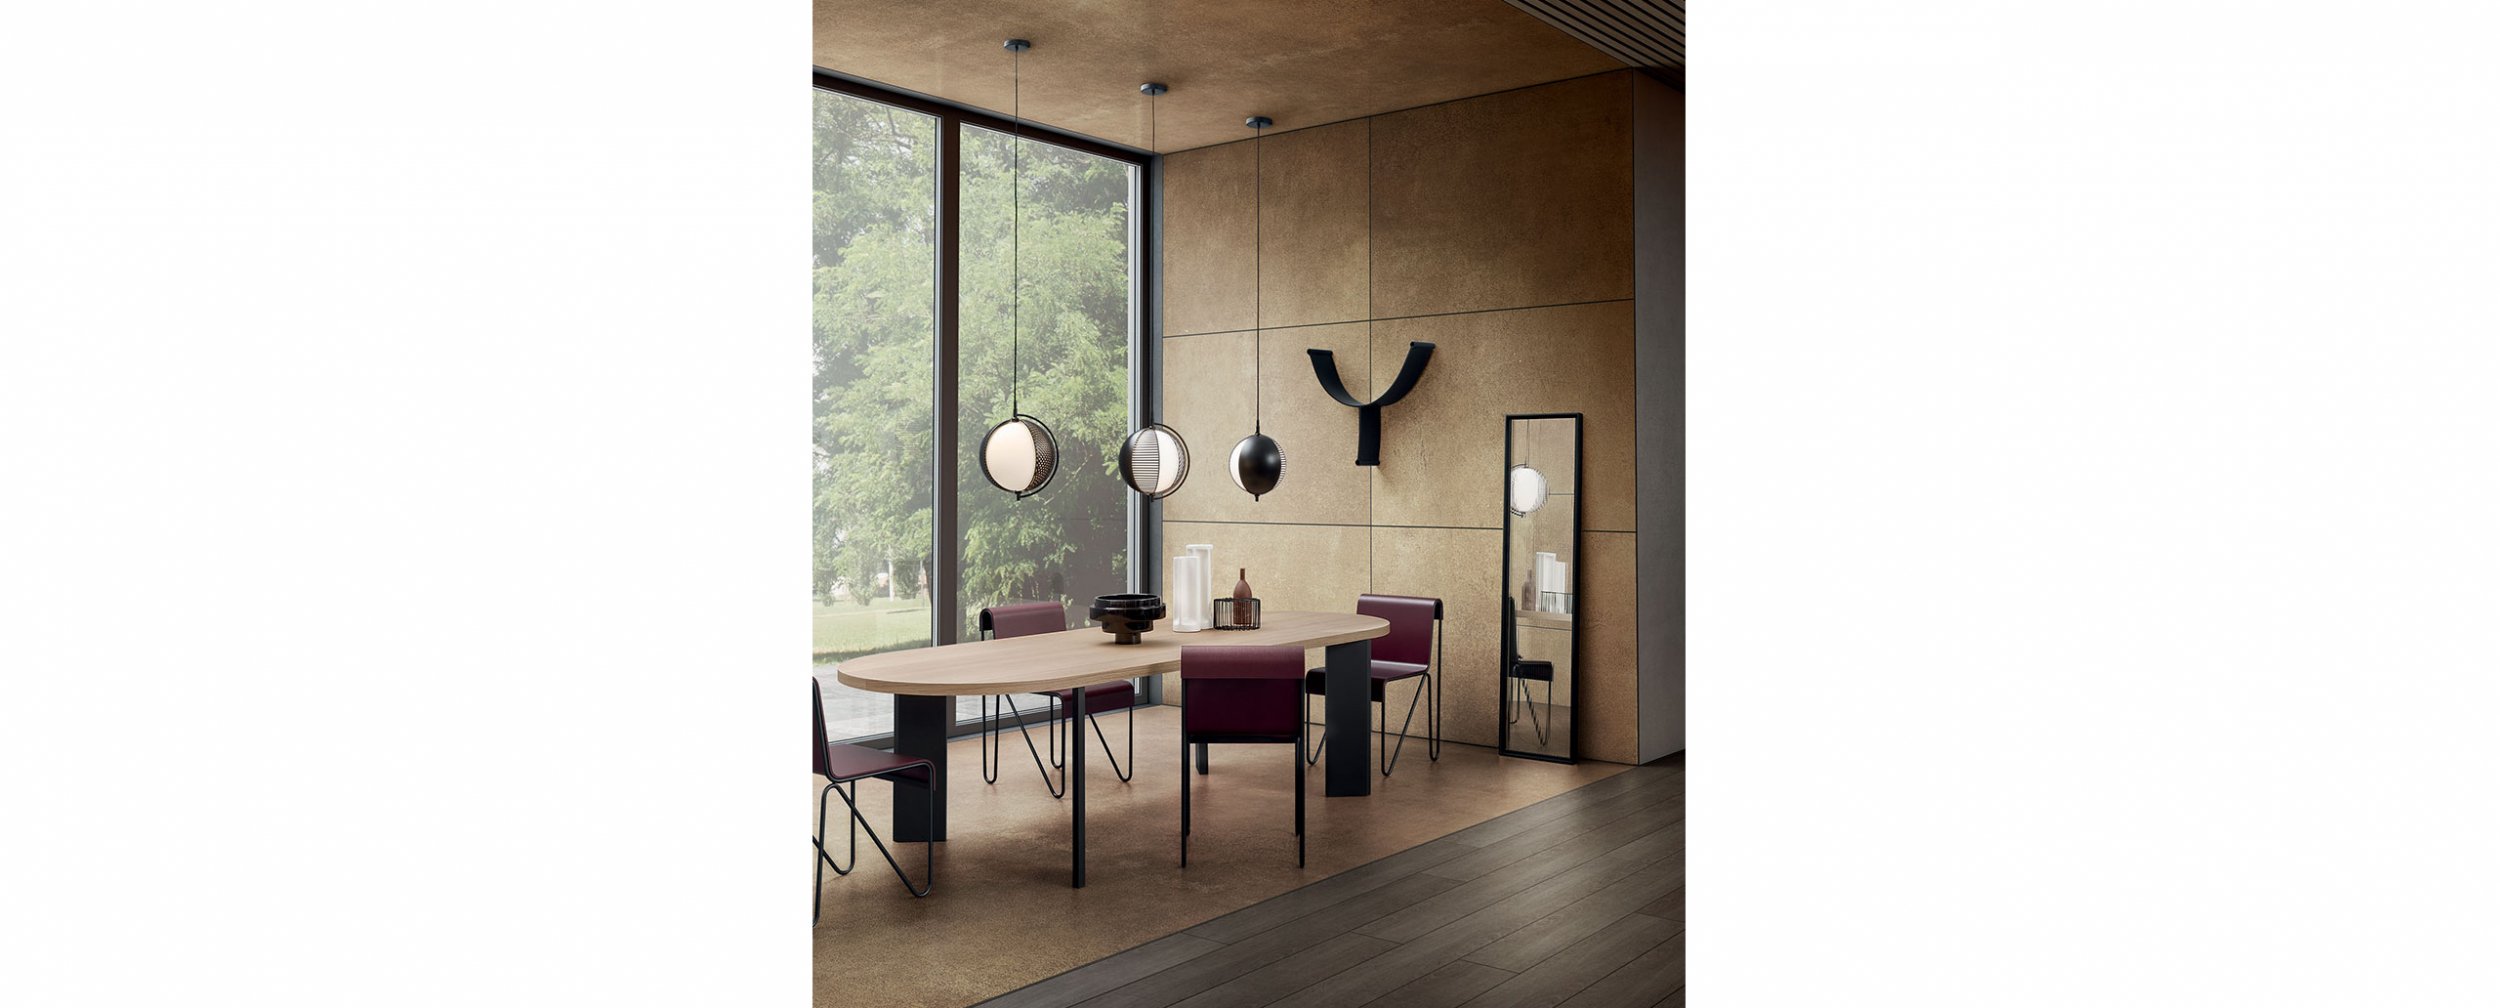 Sillas 279 Beugel | MINIM – mobiliario e de diseño contemporáneo Barcelona y Madrid,